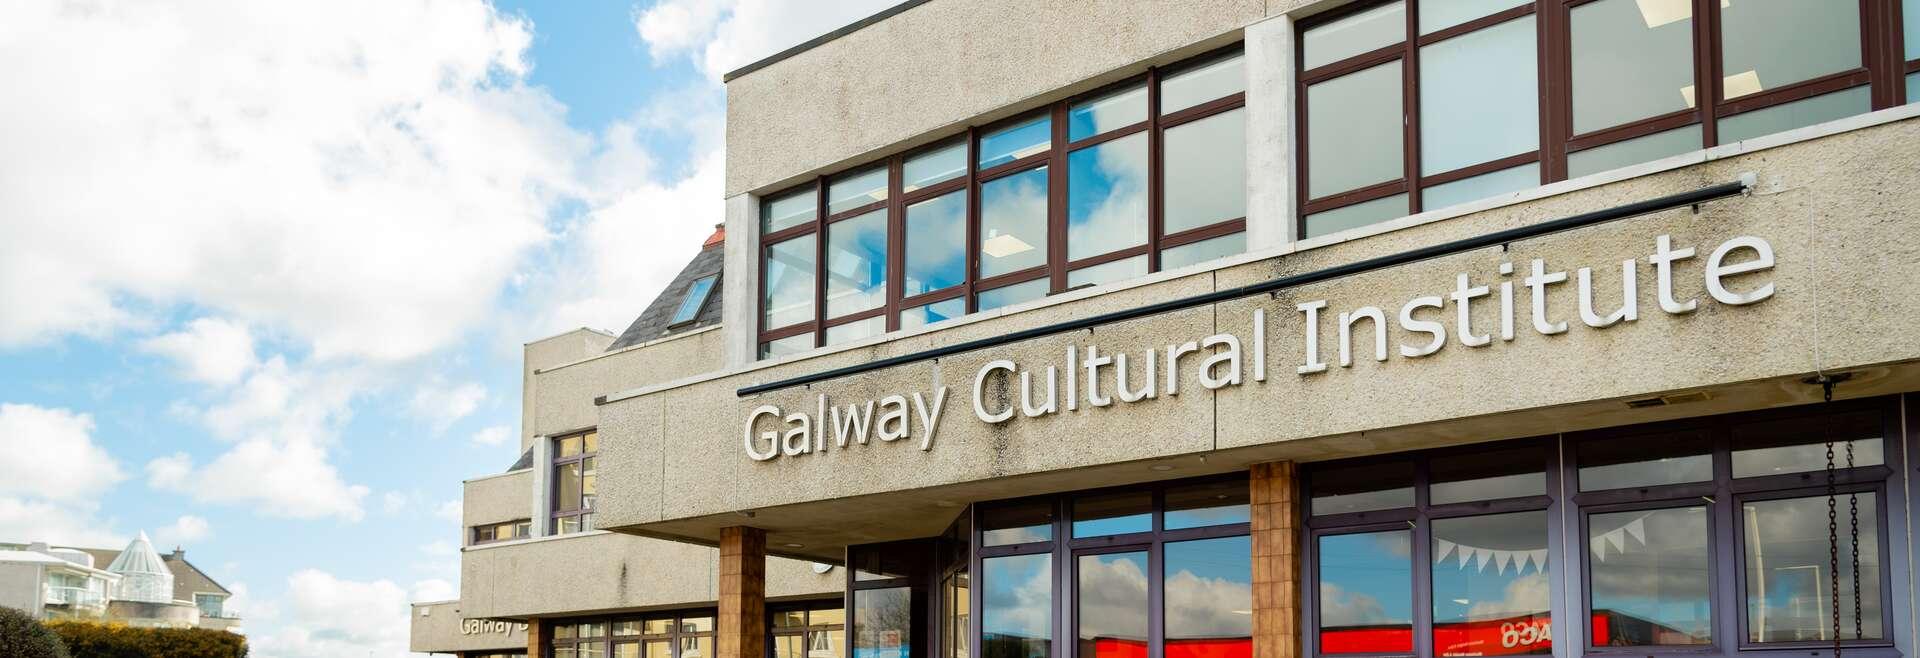 Sprachaufenthalt Irland, Galway, Galway Cultural Institute, Gebäude